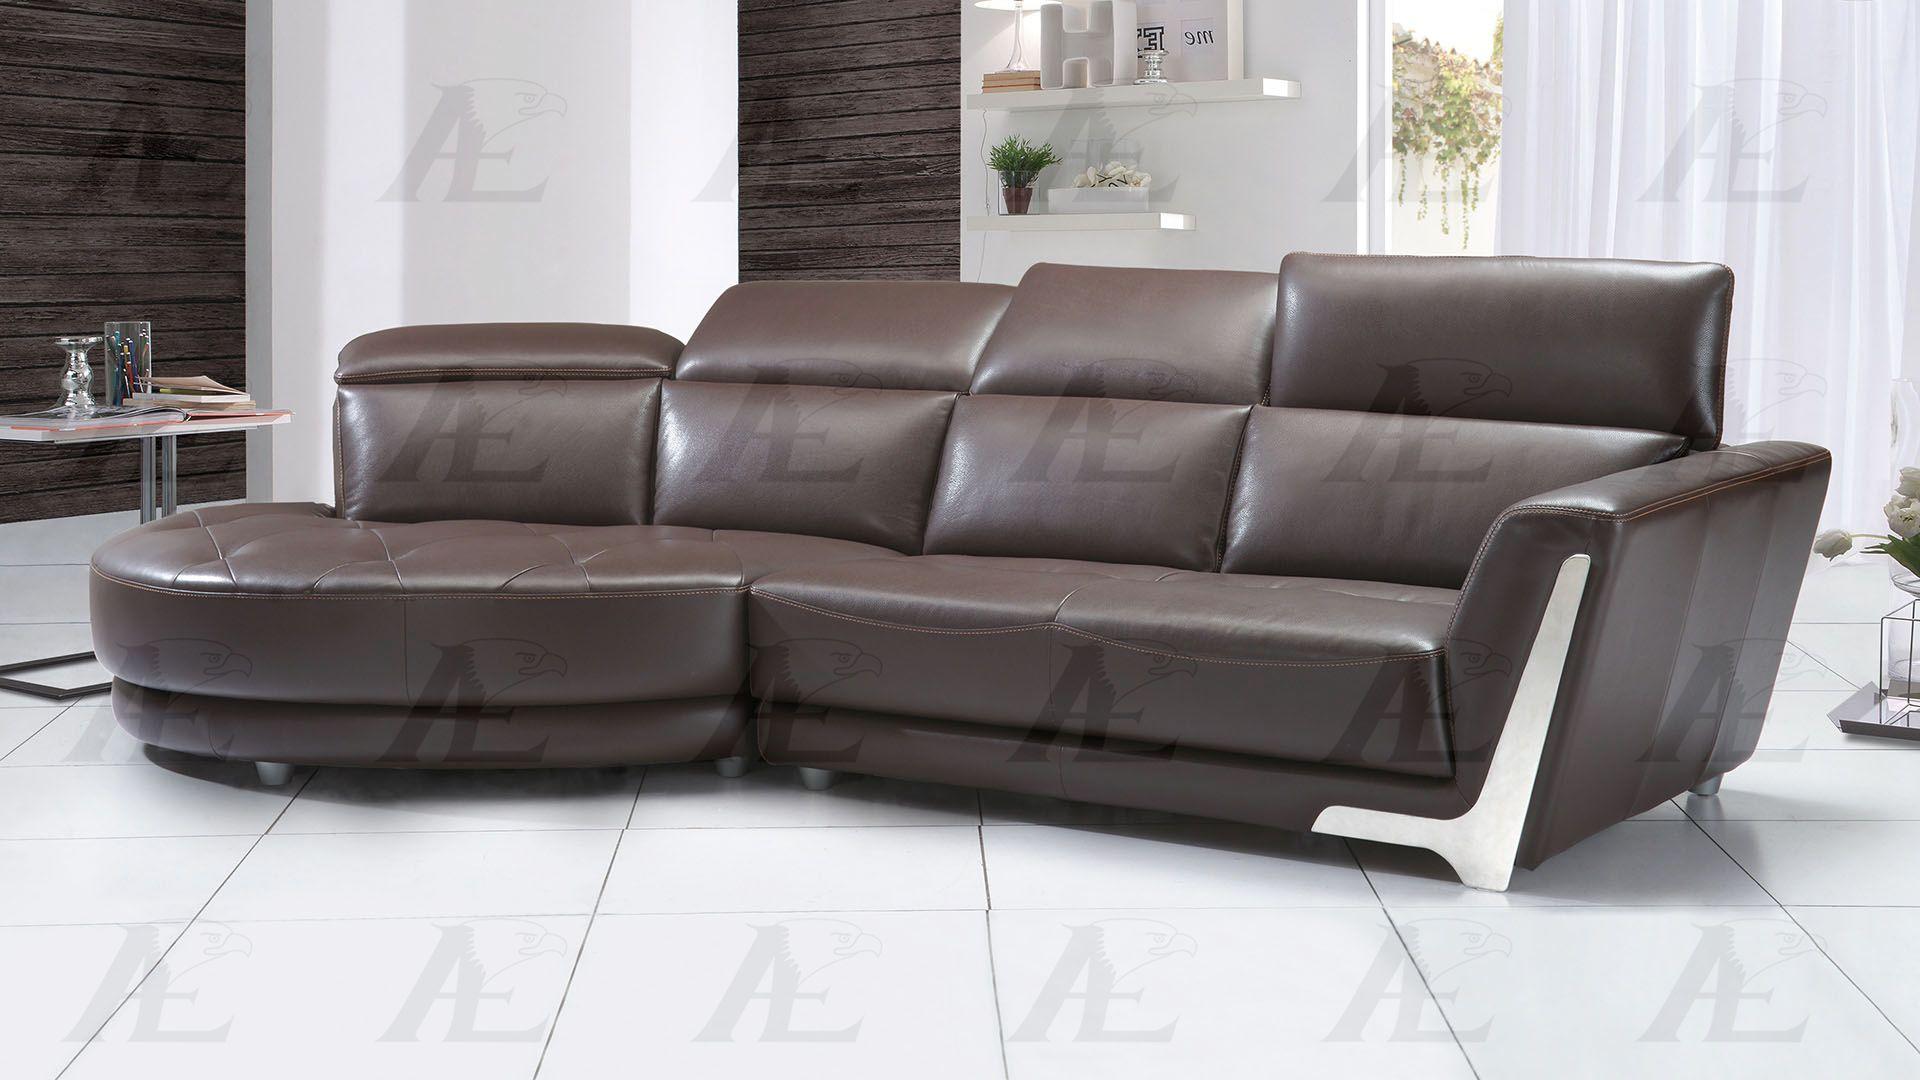 Modern Sectional Sofa EK-L696-DB EK-L696-DB Set-2 RHC in Dark Brown Italian Leather